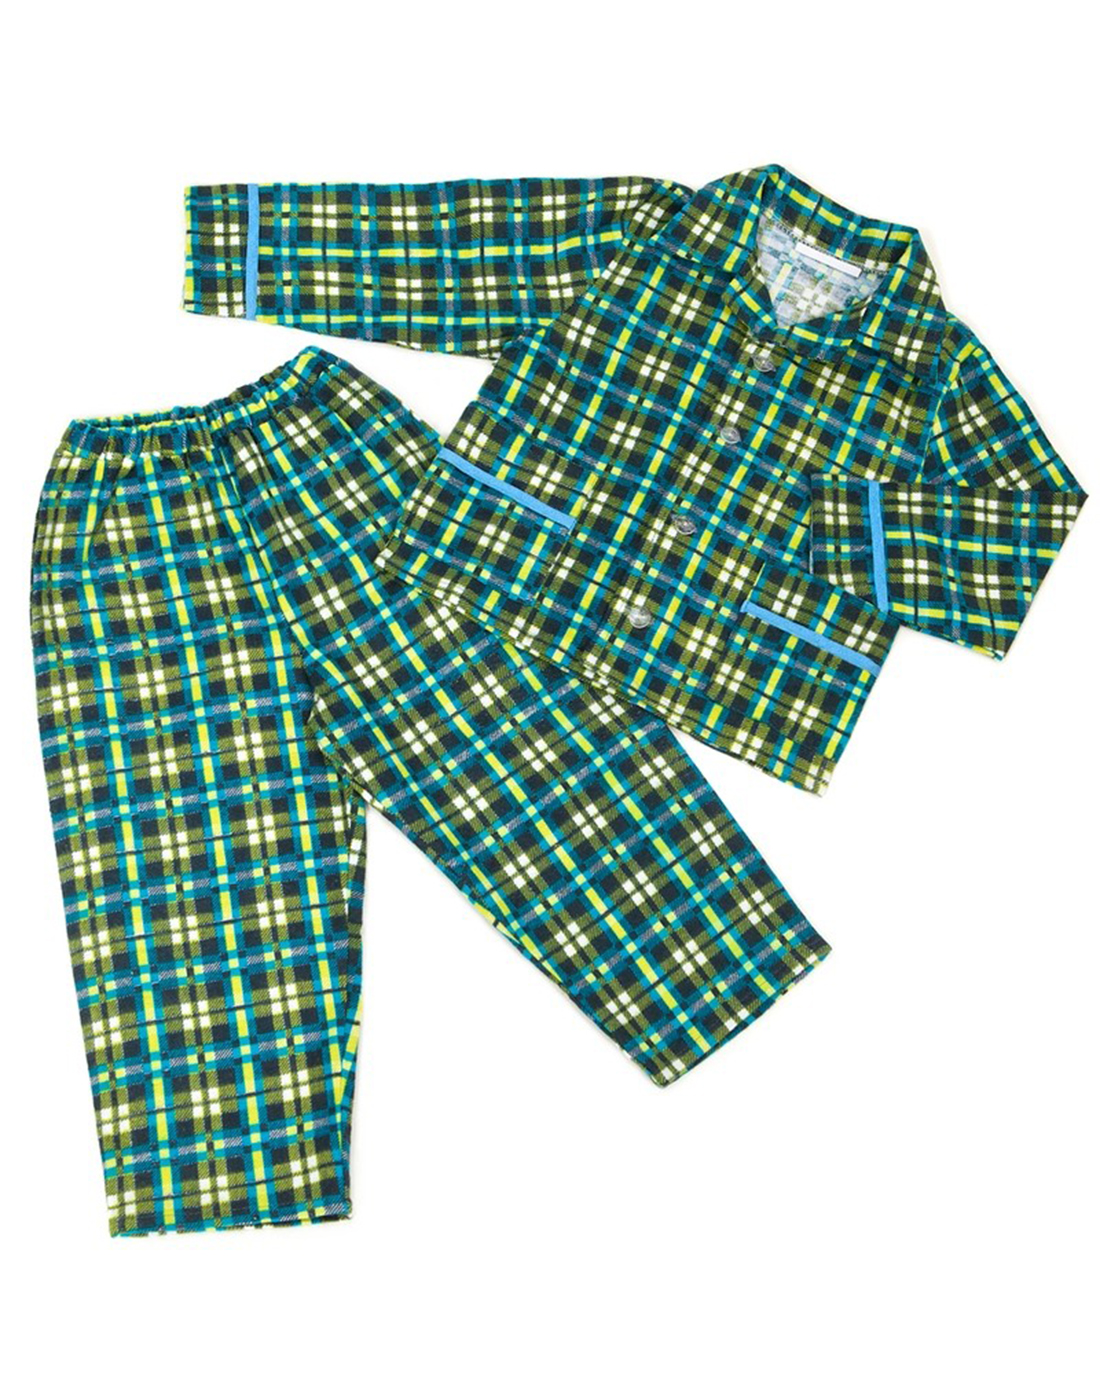 Пижама фланелевая для мальчика (арт. ПЖФЛ-001)